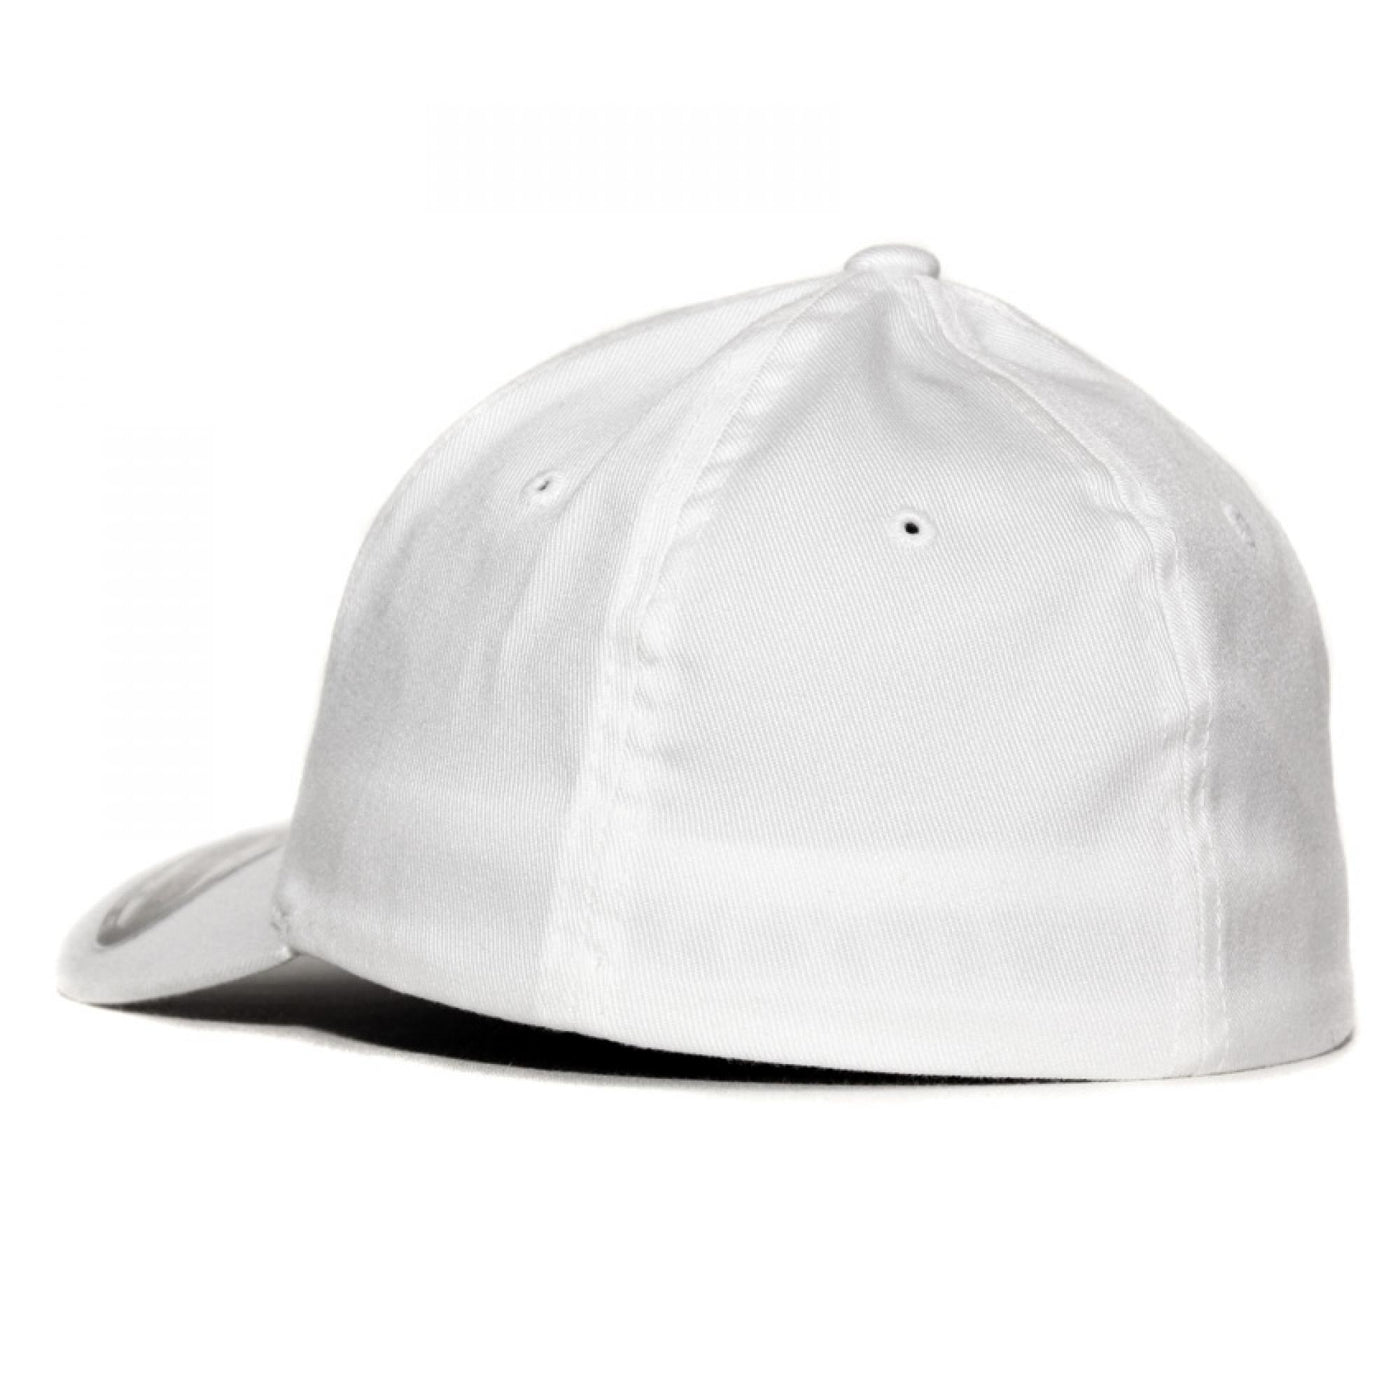 Flexfit cap white - Shop-Tetuan